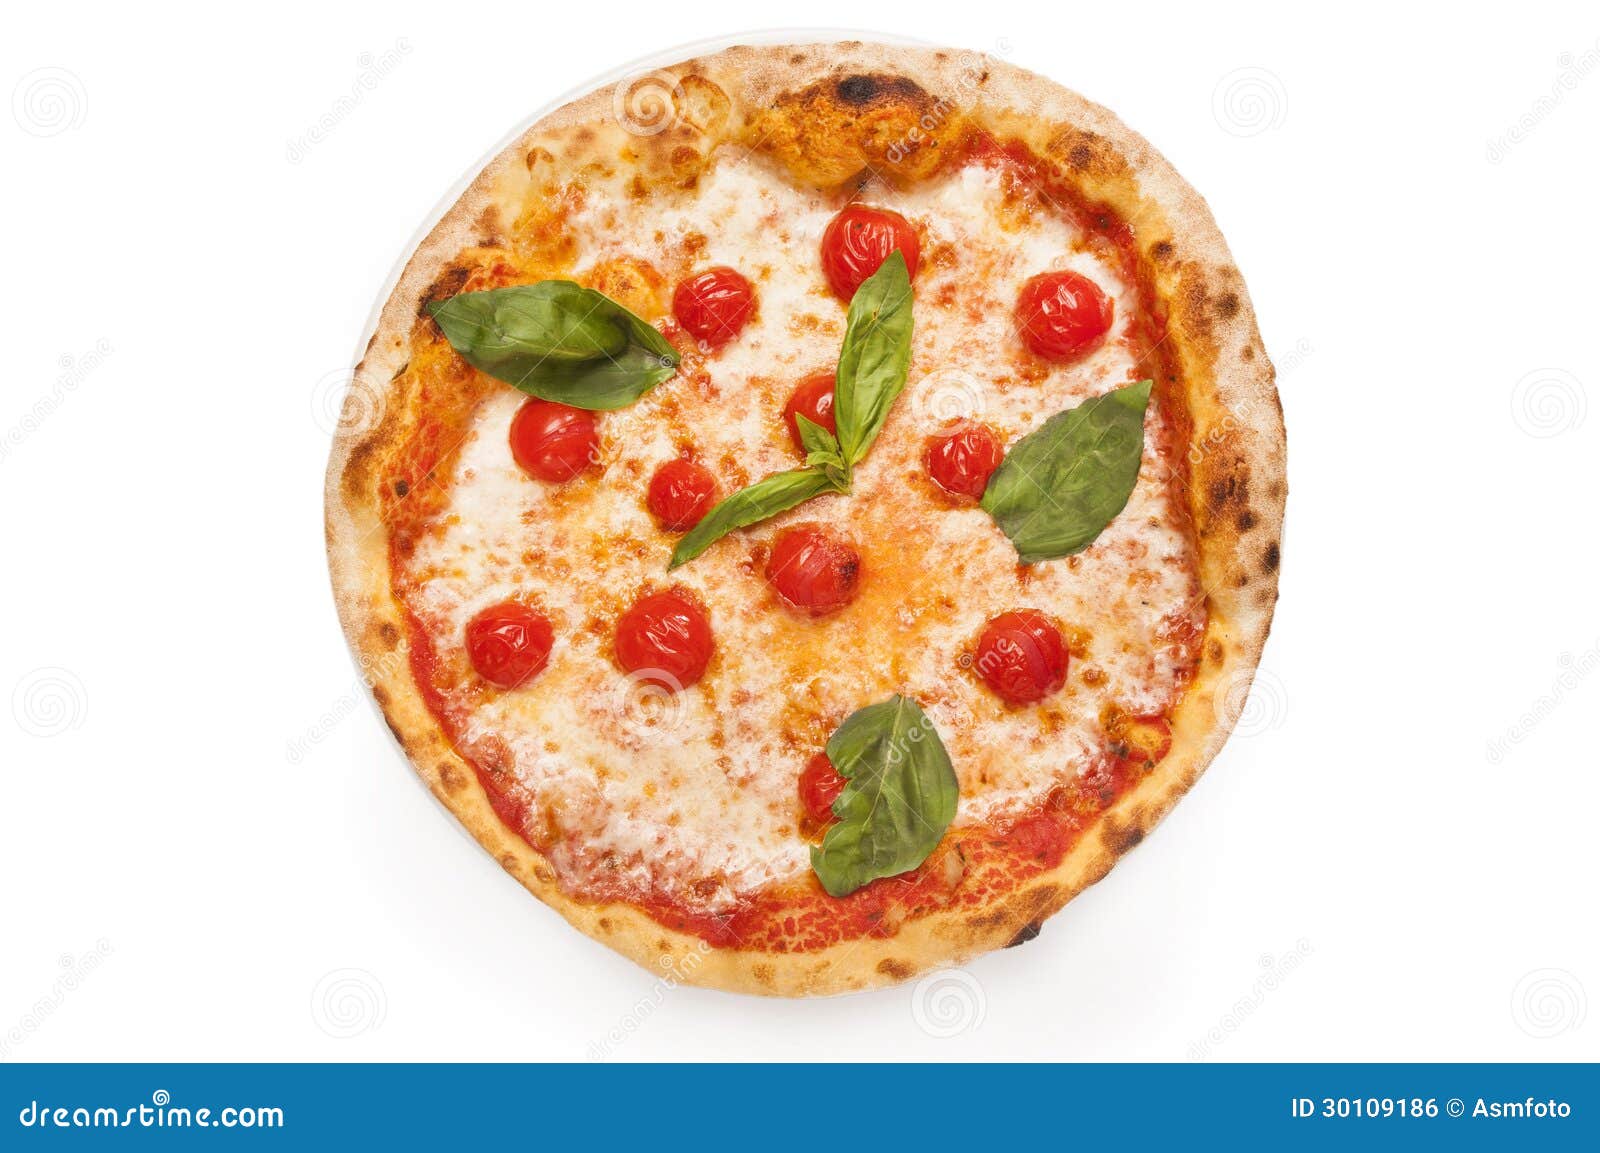 чем отличается неаполитанская пицца от римской фото 80